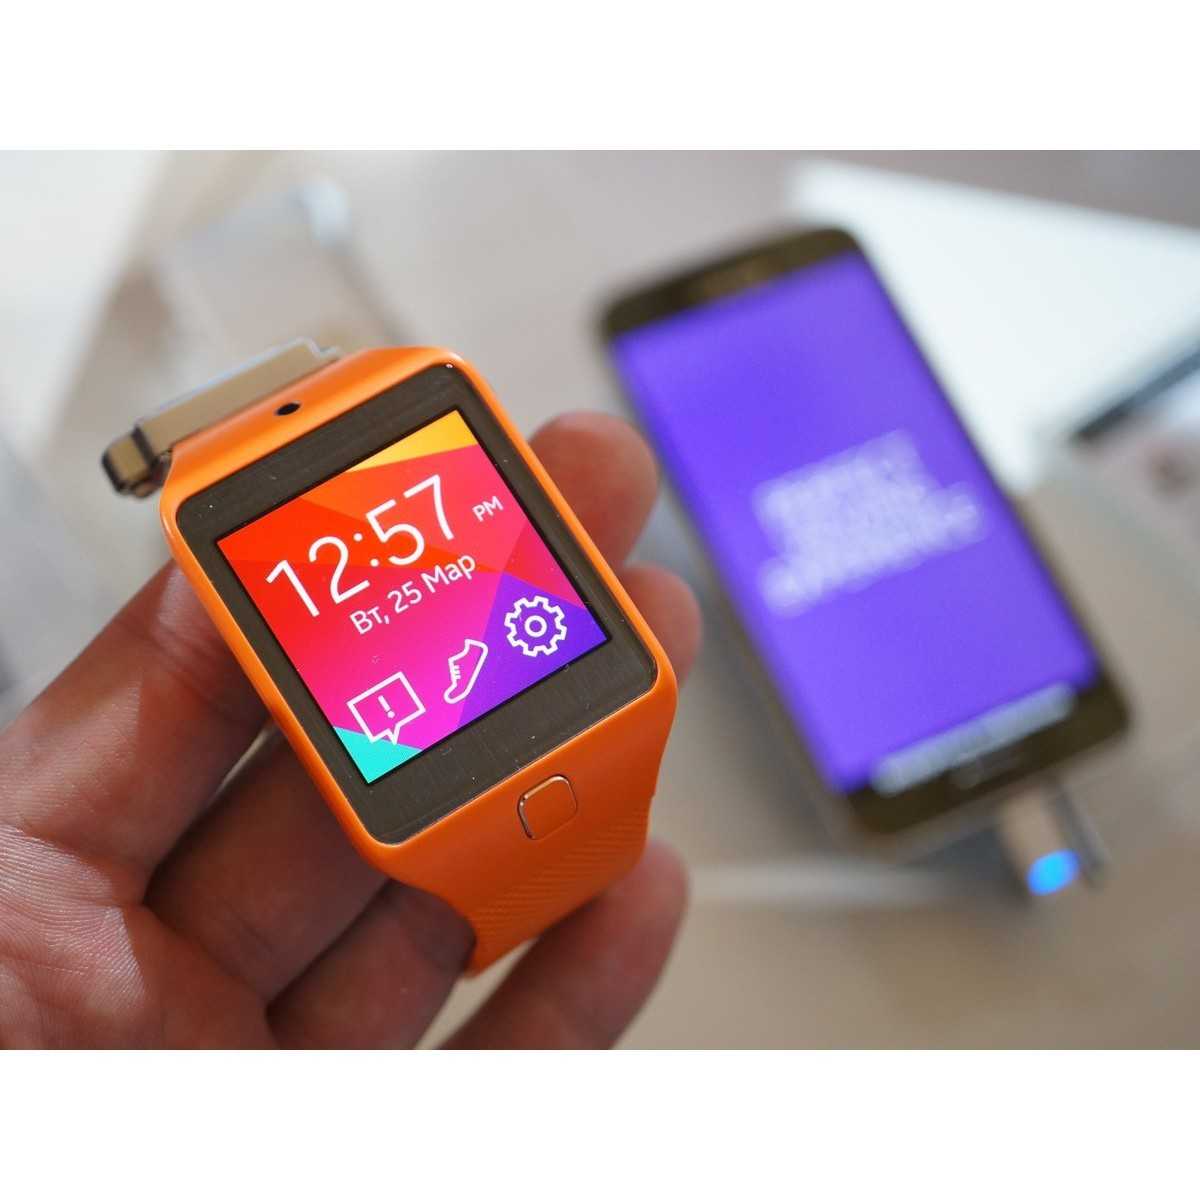 Умные часы samsung gear 2 neo (sm-r3810zoaser) (оранжевый) - купить , скидки, цена, отзывы, обзор, характеристики - умные часы и браслеты